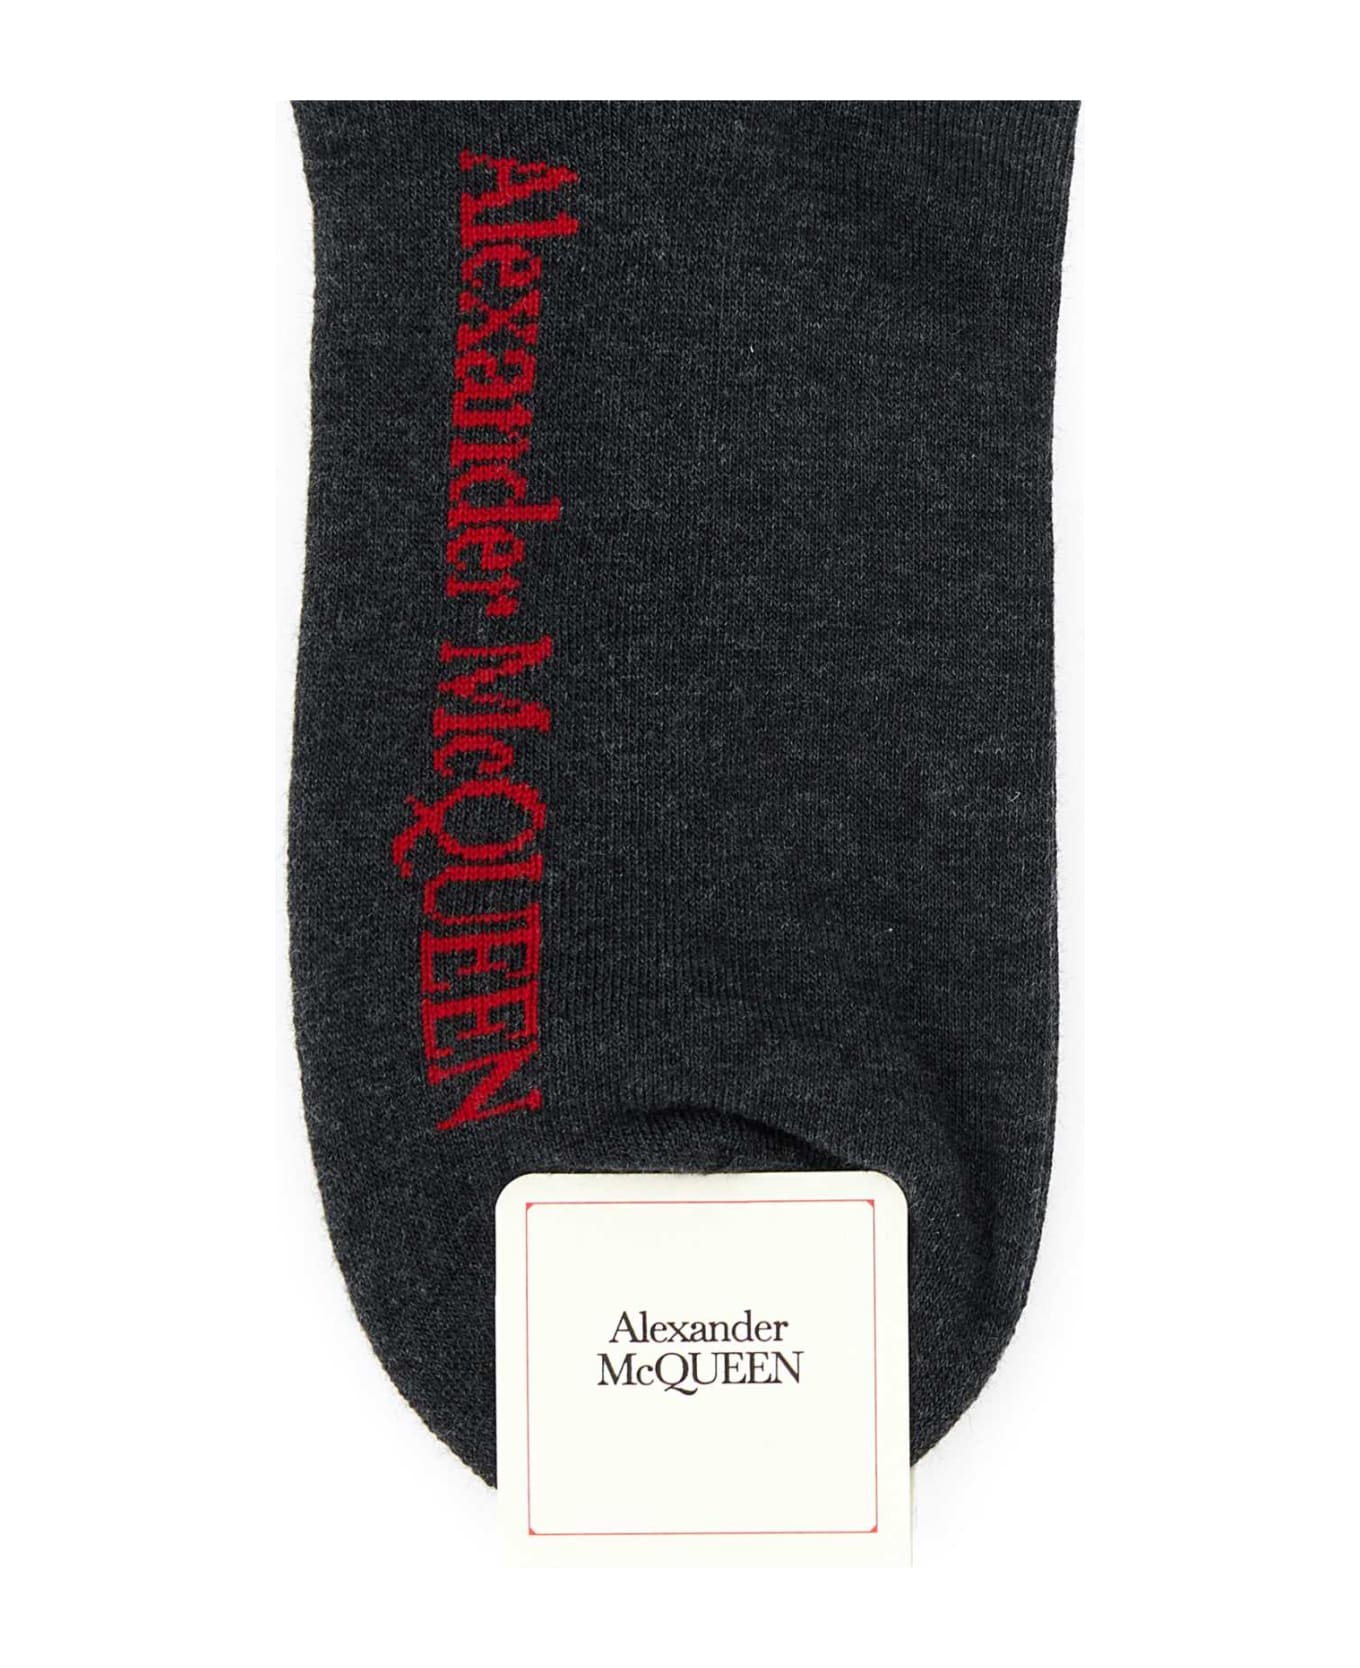 Alexander McQueen Graphite Stretch Cotton Blend Socks - BLACKRED 靴下